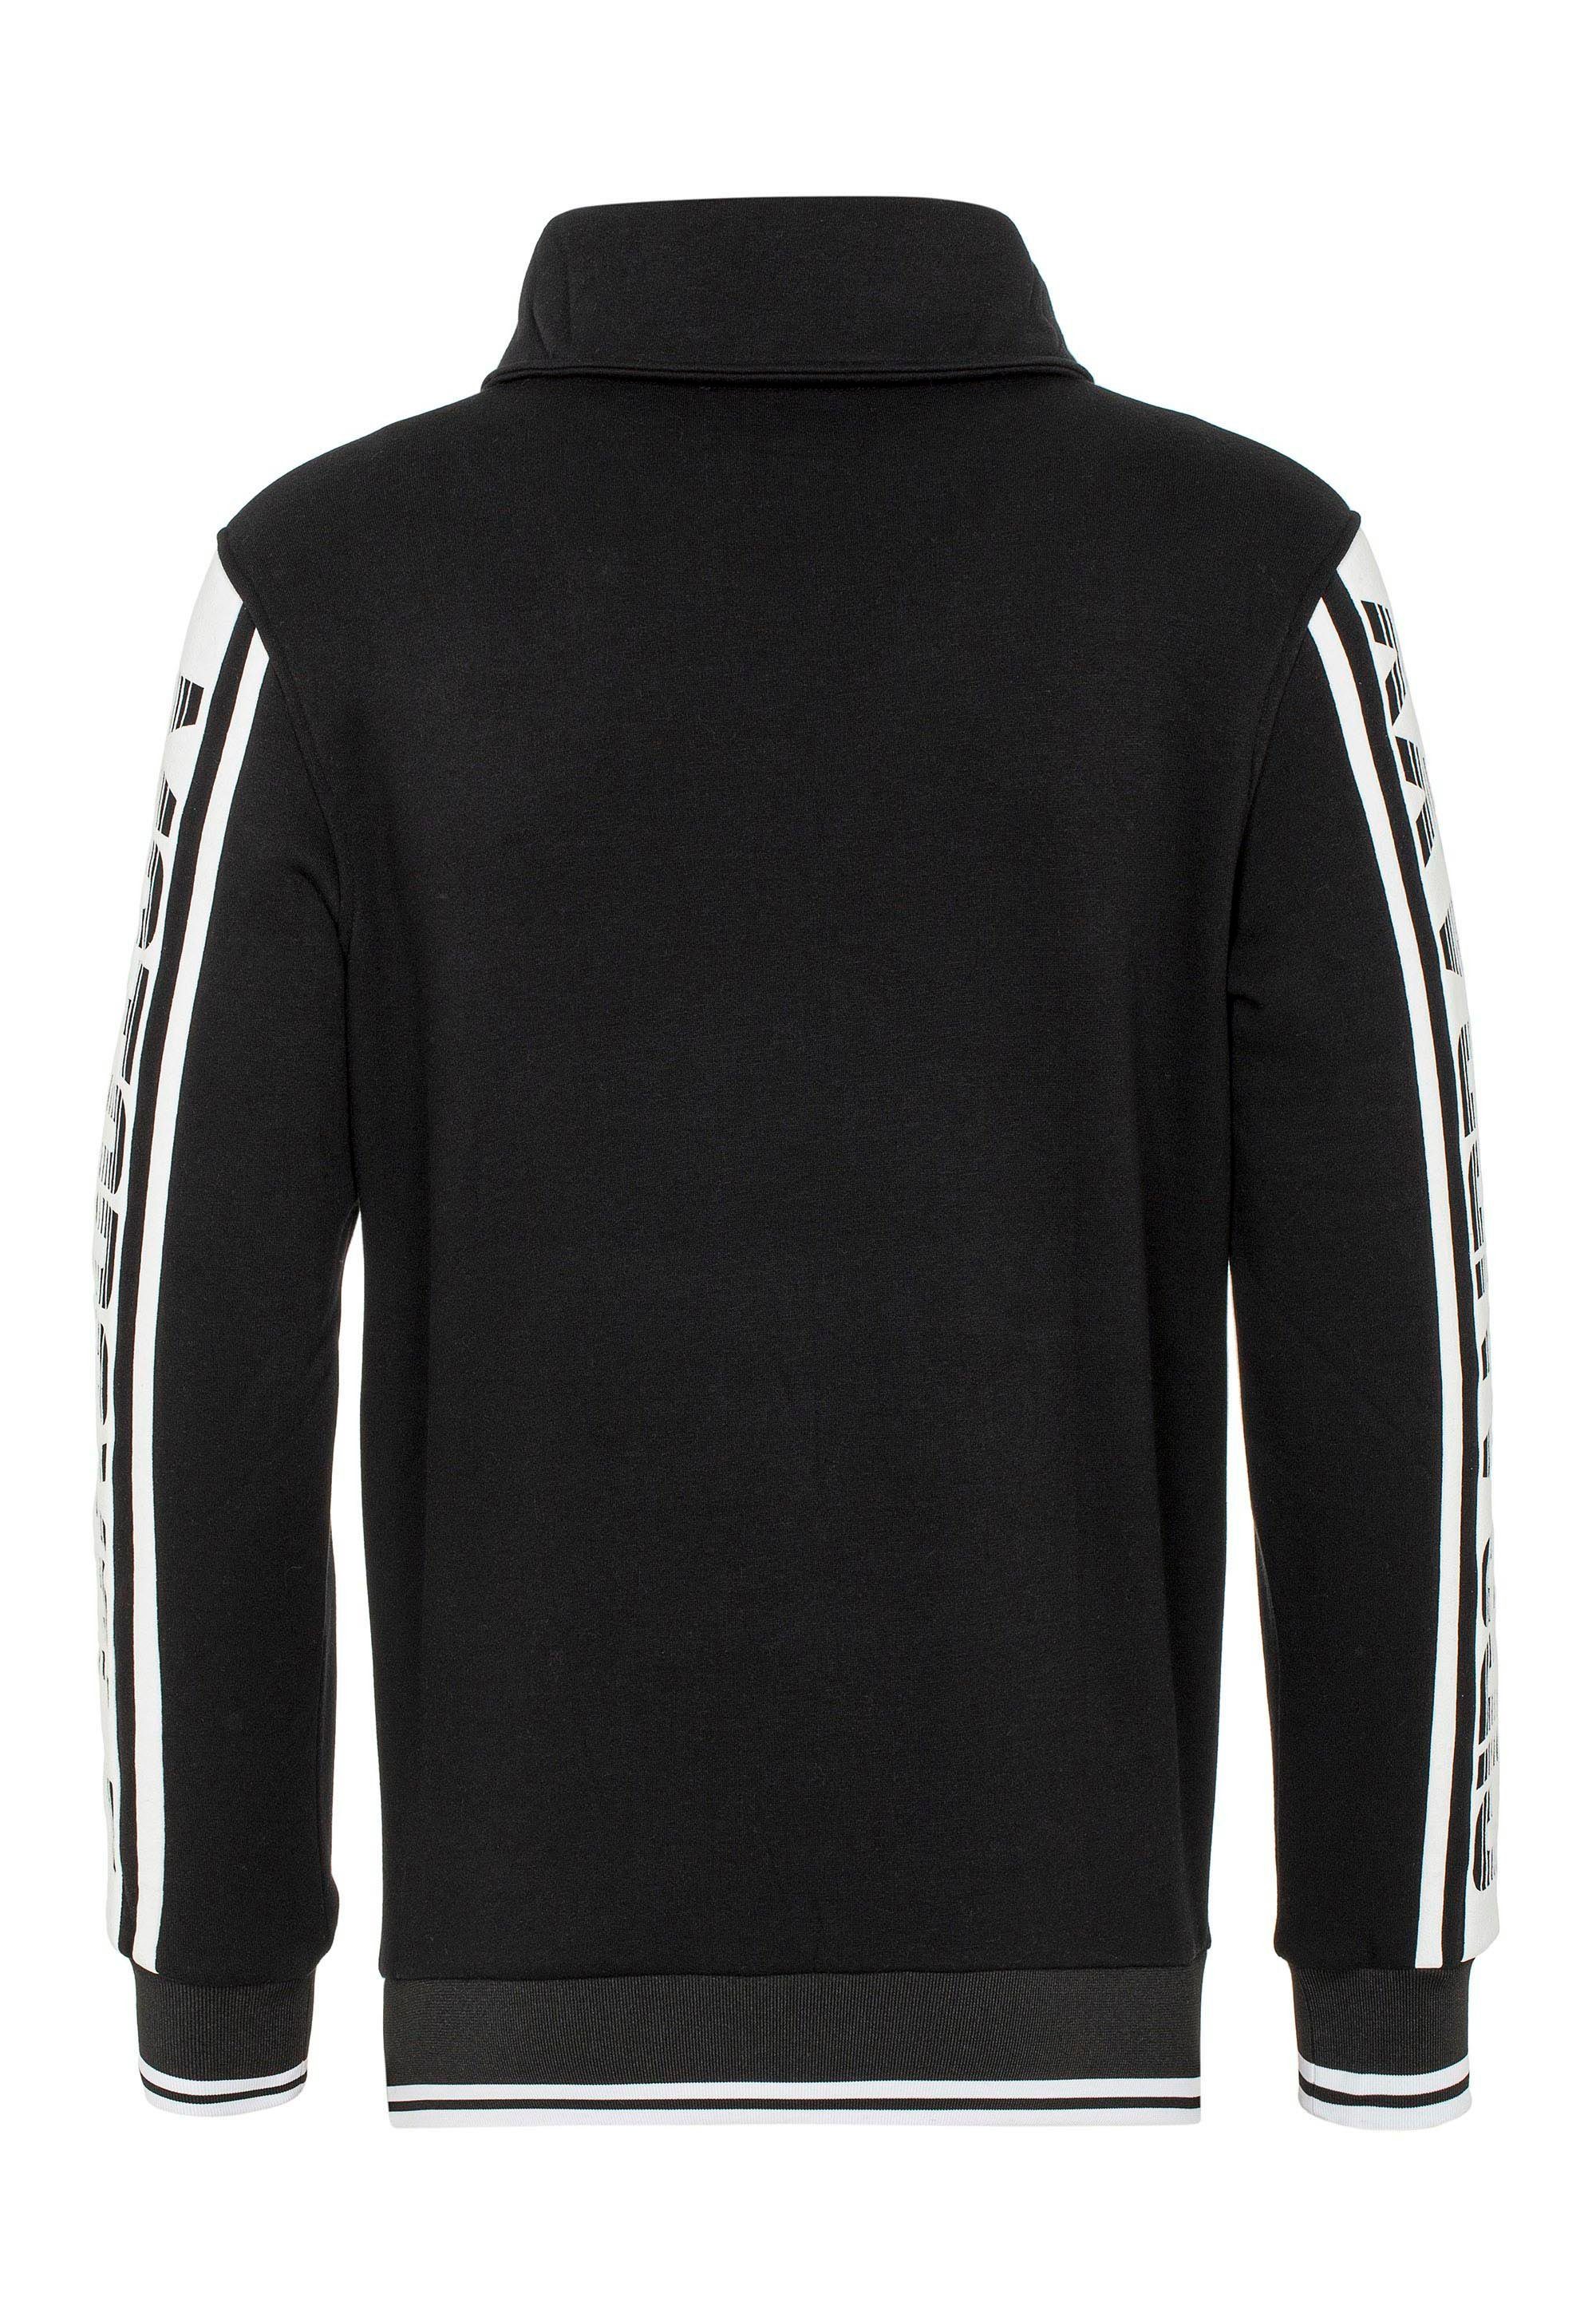 Sweatshirt hochabschließendem Baxx & Kragen Cipo schwarz mit